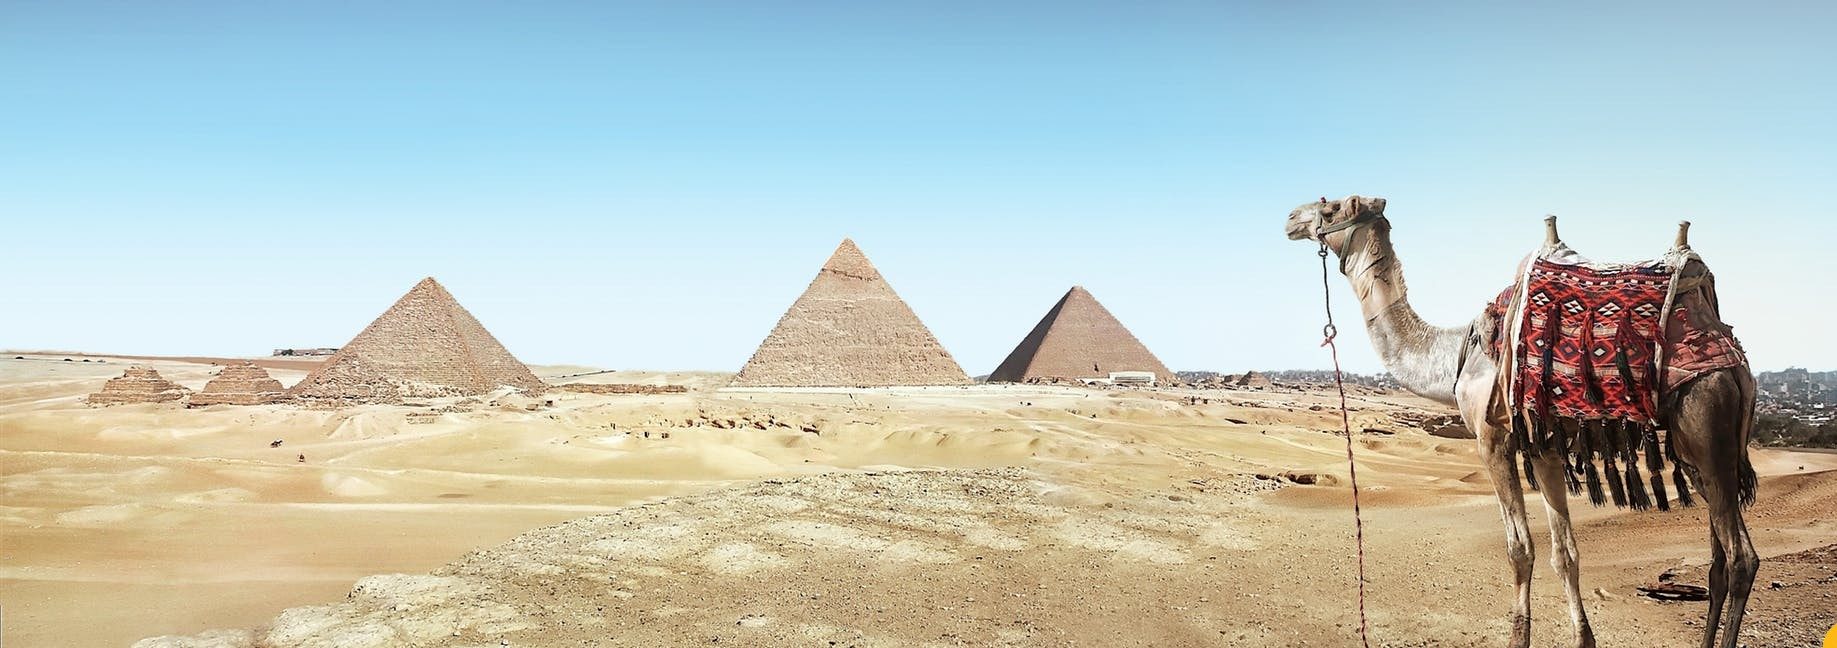 Tumačenje vidjeti Egipćanina u snu – Tumačenje snova online